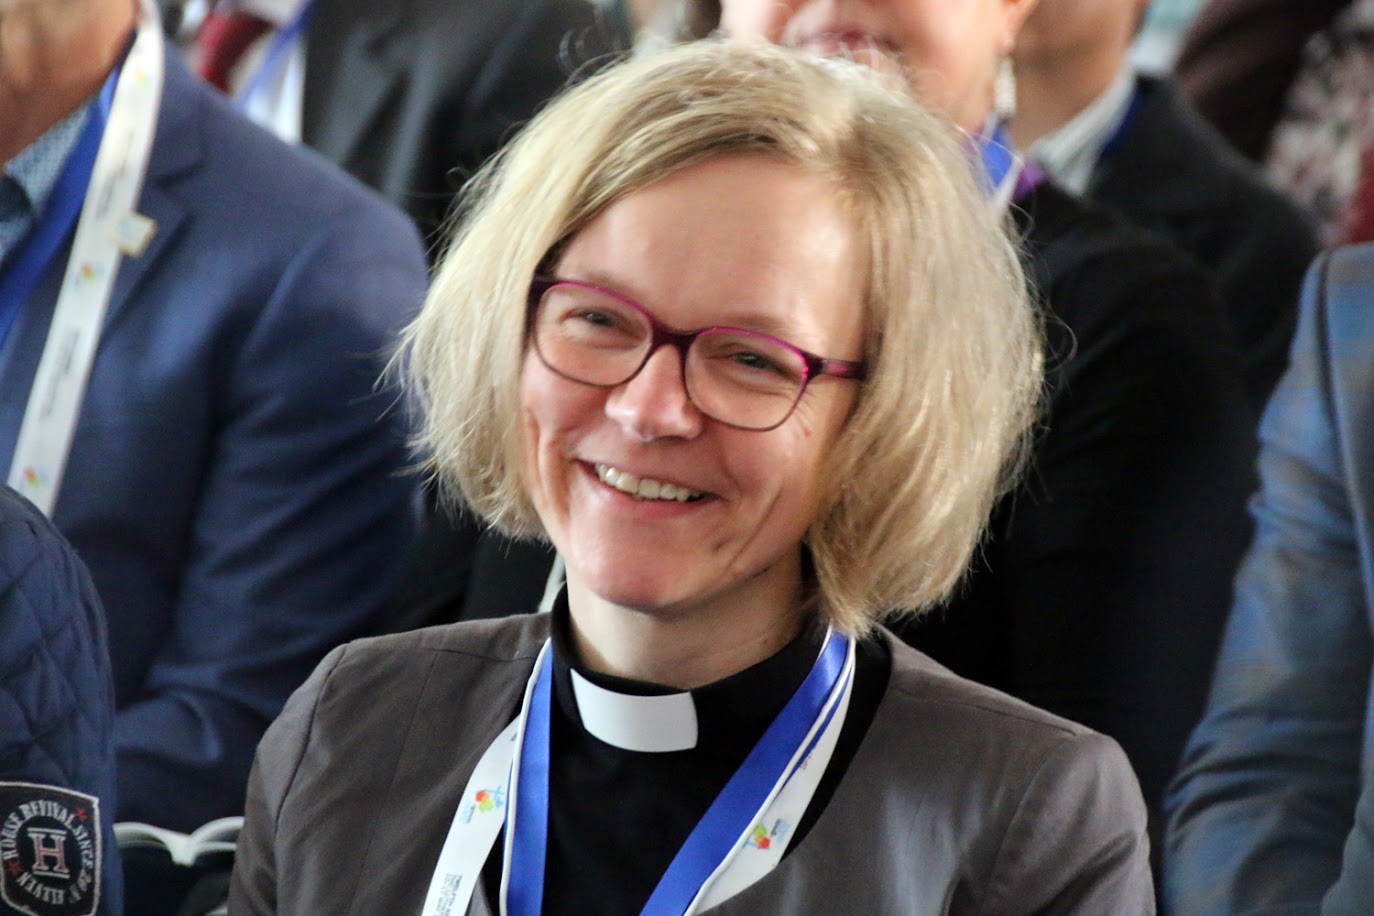 Eva Hadem aus der Evangelischen Kirche in Mitteldeutschland. Foto: LWB/Ralf-Uwe Beck